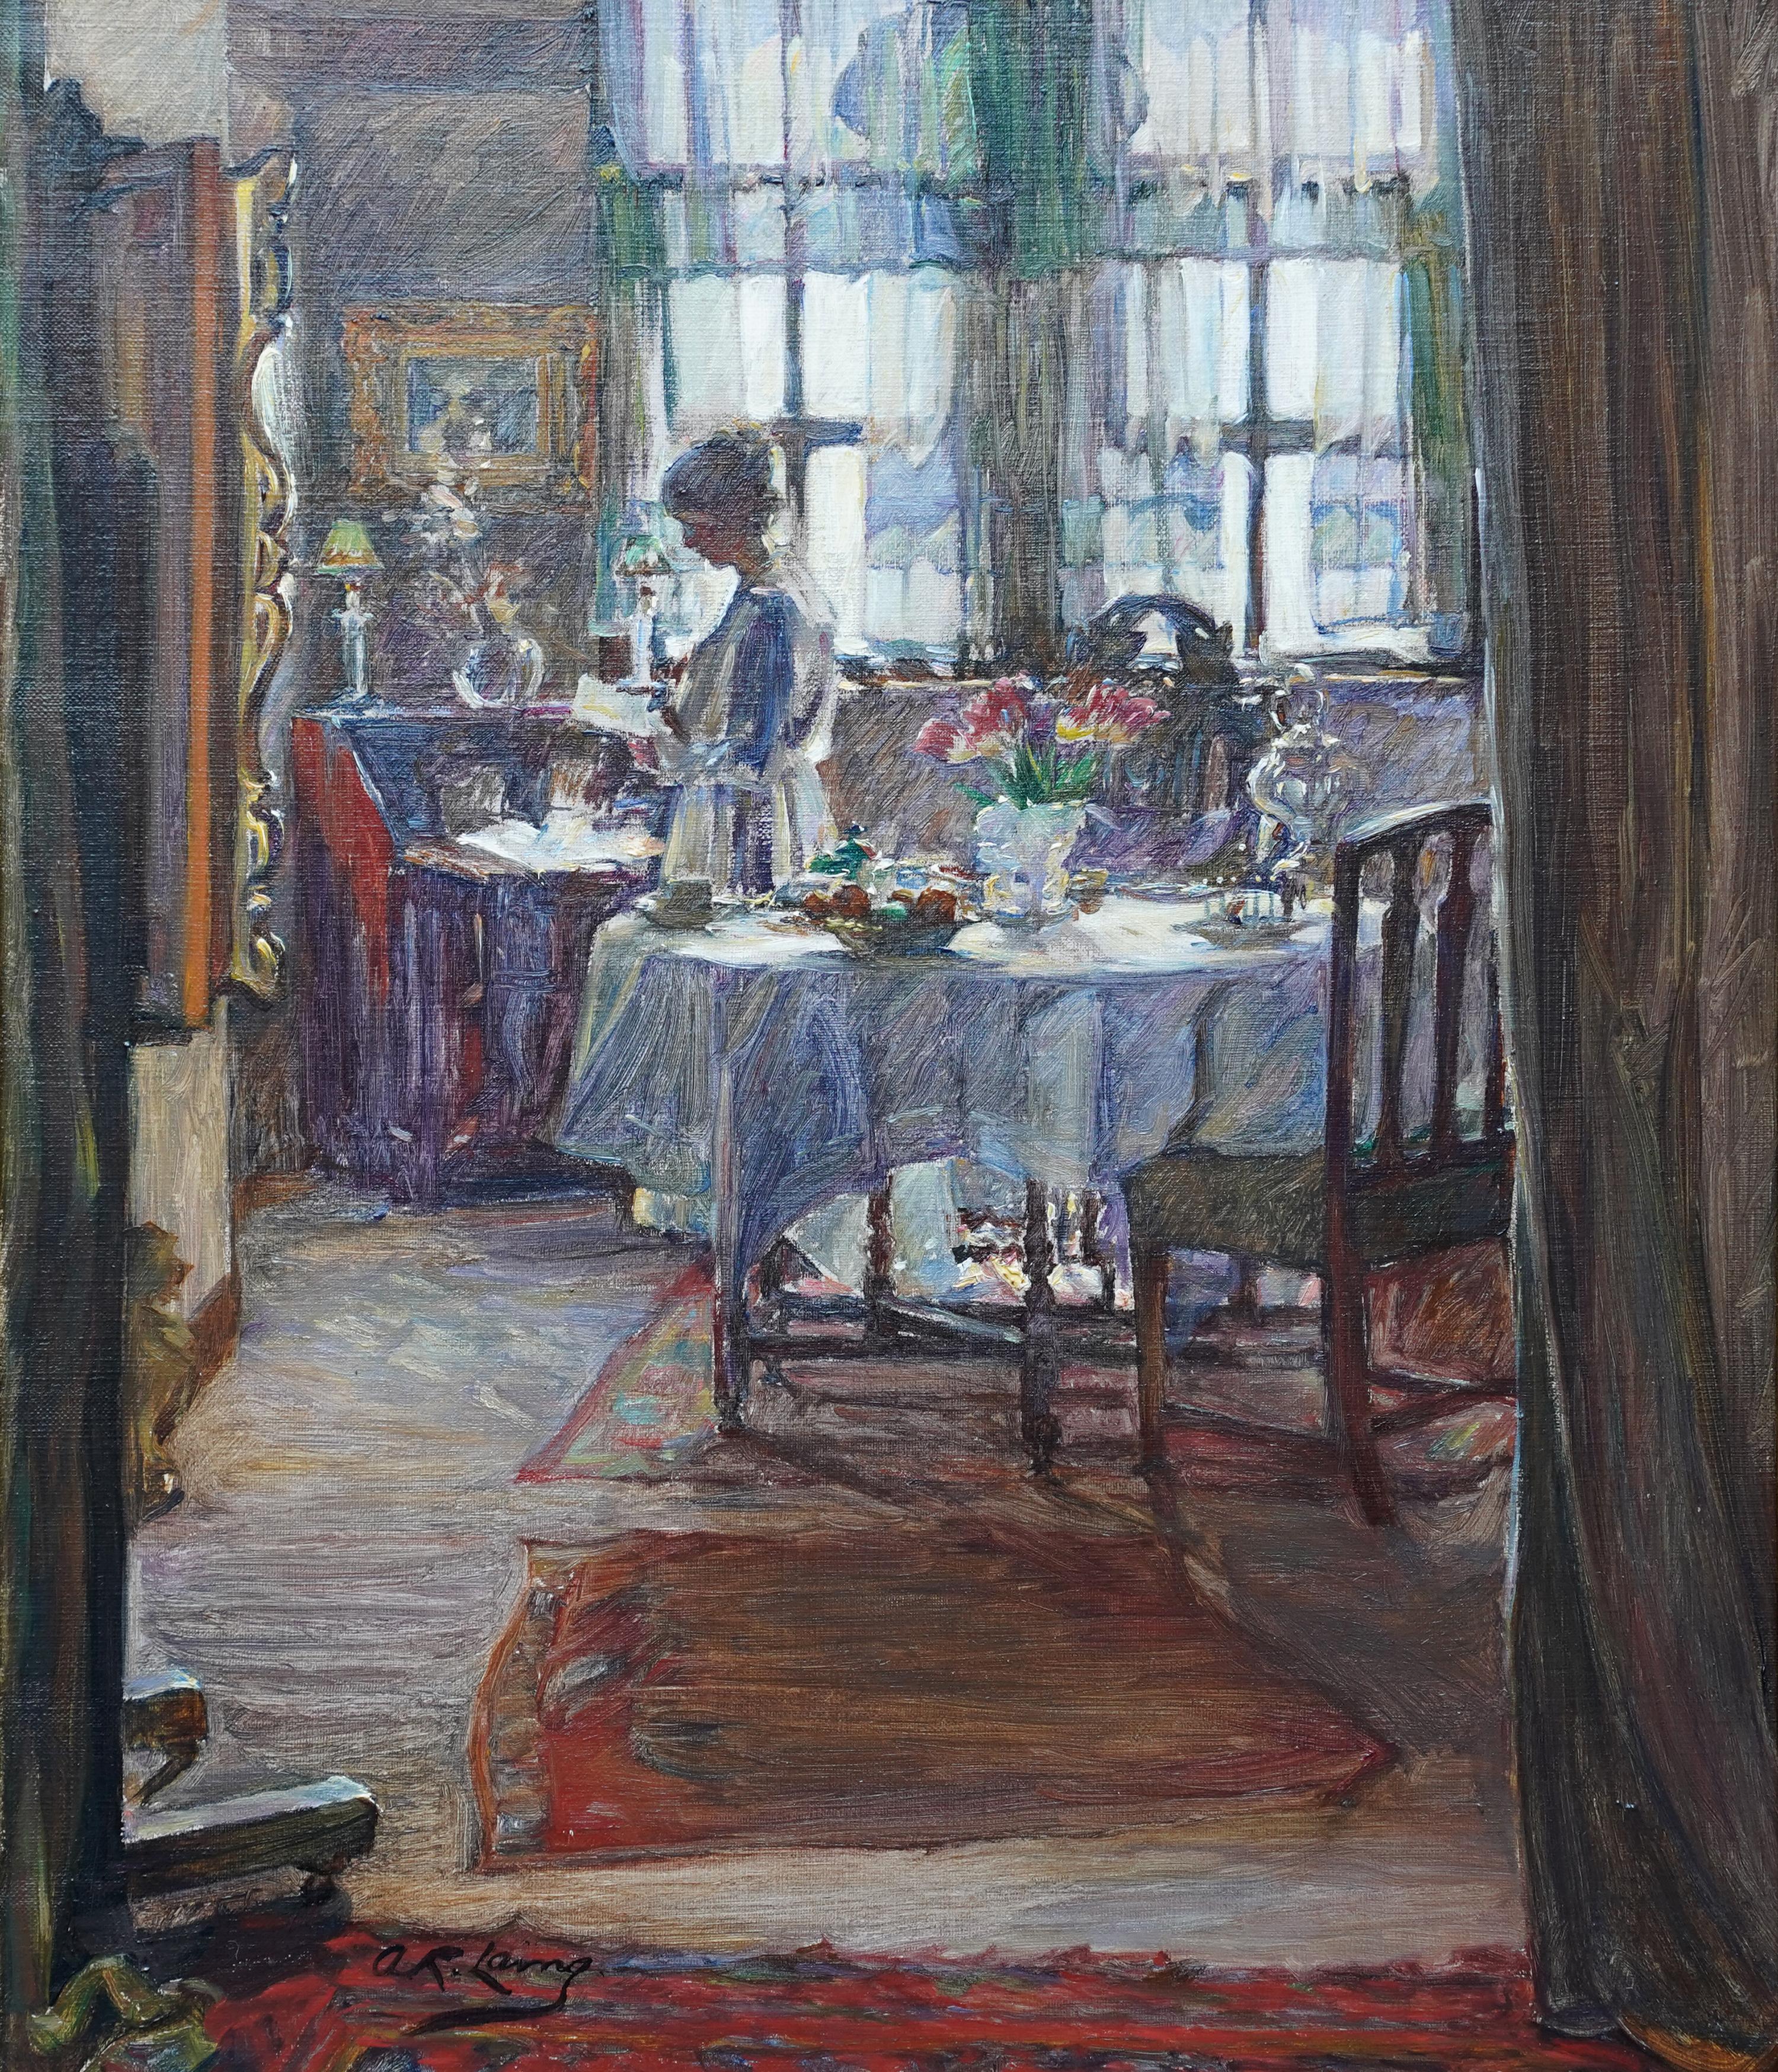 Interieur mit Lady Reading – schottisches edwardianisches Porträt-Ölgemälde von 1910 – Painting von Annie Rose Laing